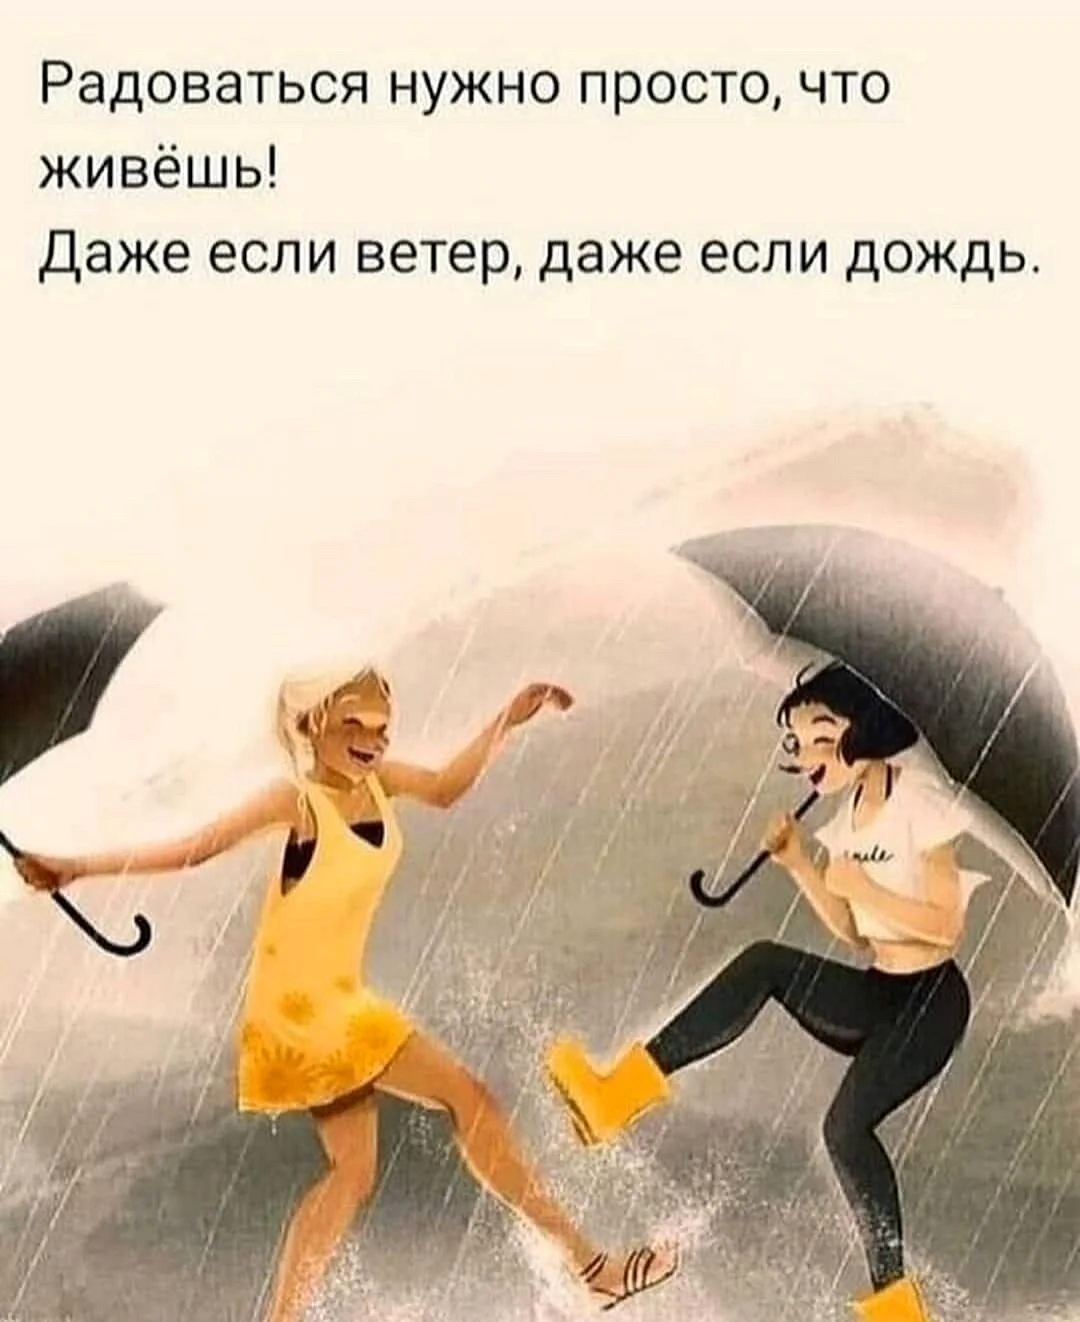 Радоваться нужно просто что живёшь даже если ветер даже если дождь